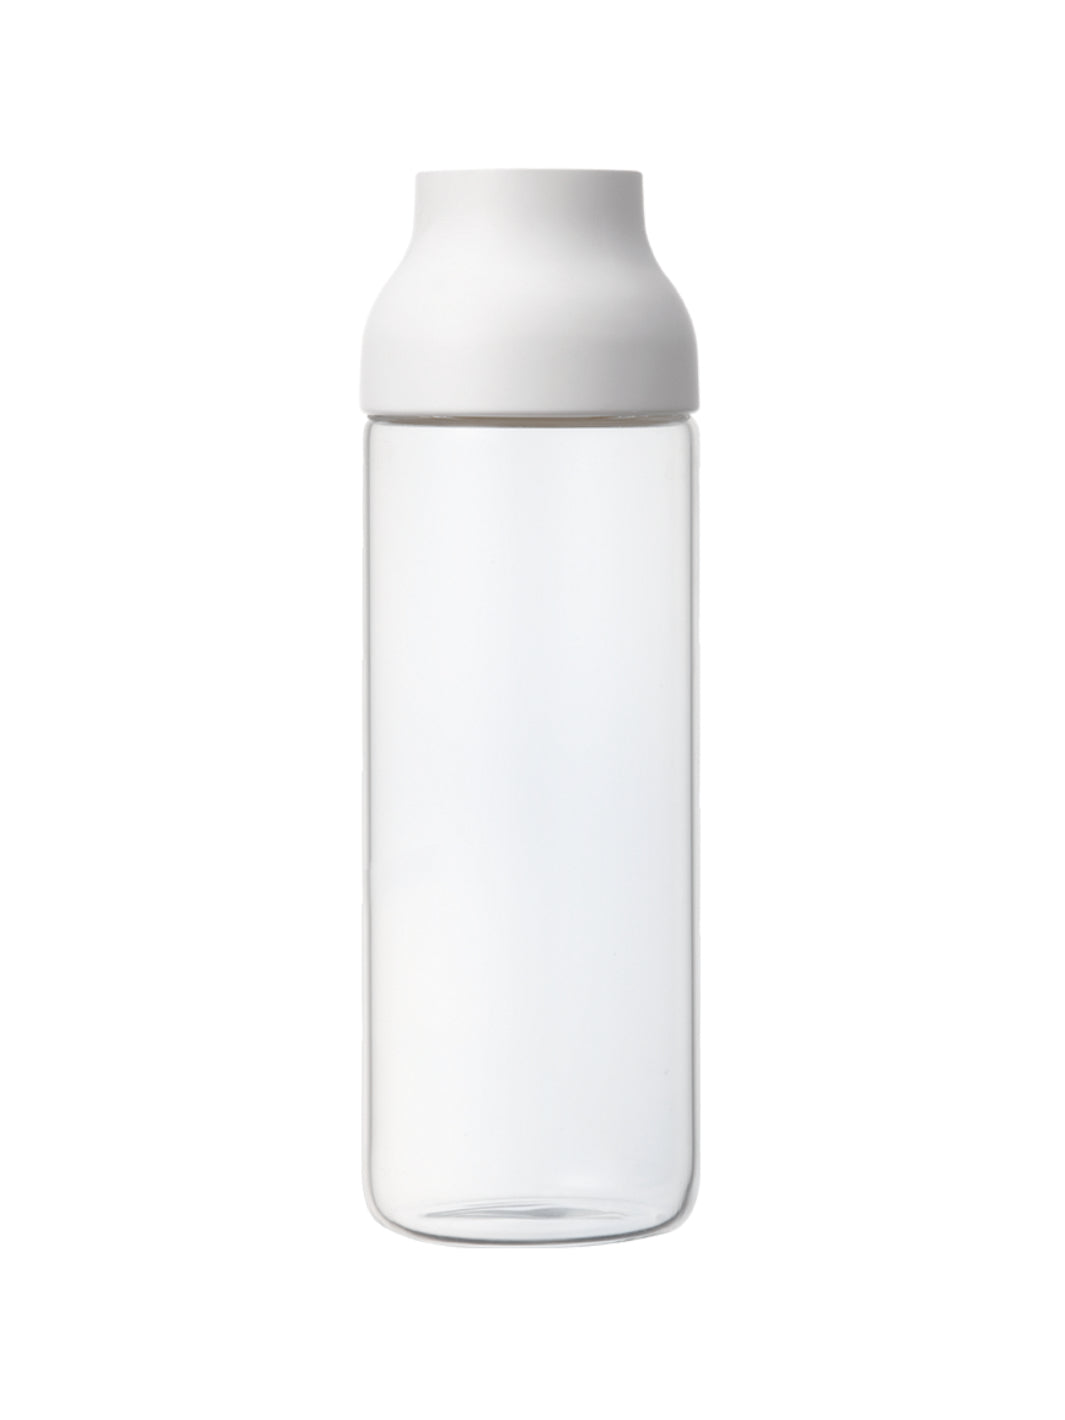 KINTO Water Bottle (950ml/32oz) – Someware